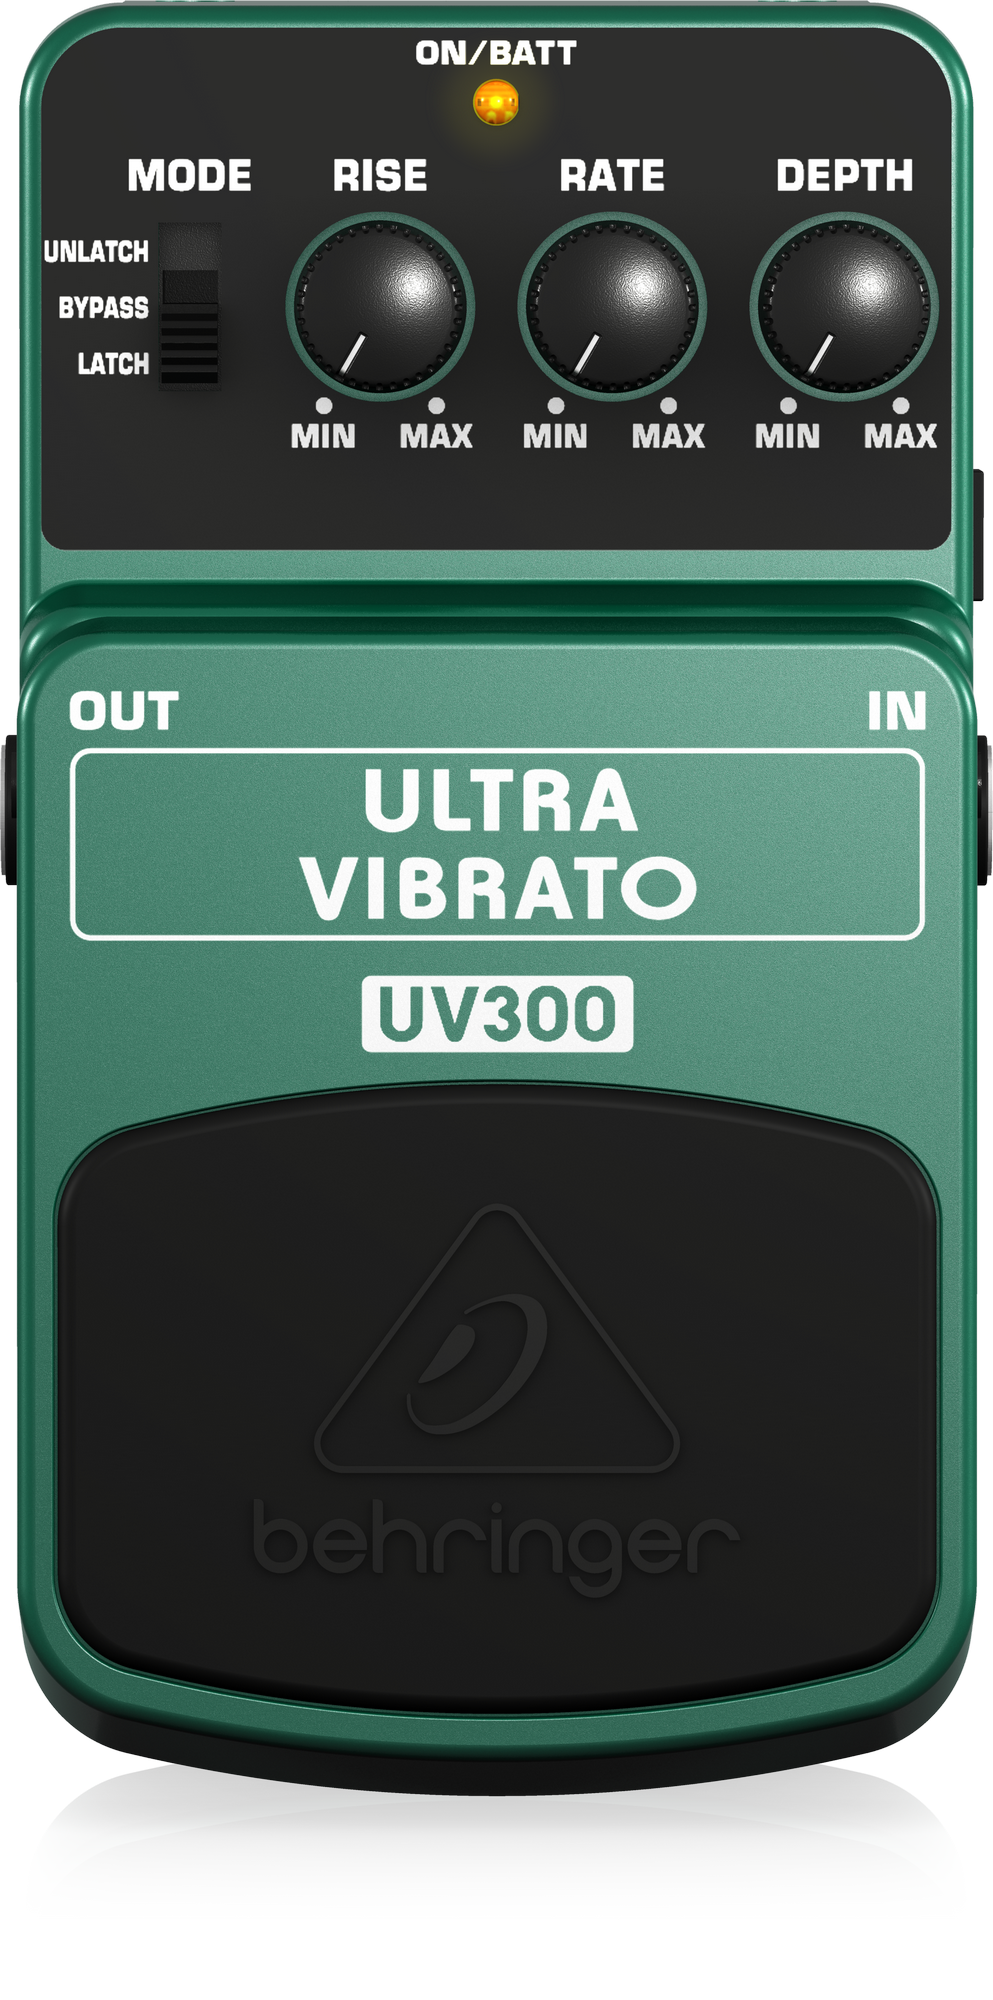 ULTRA VIBRATO UV300